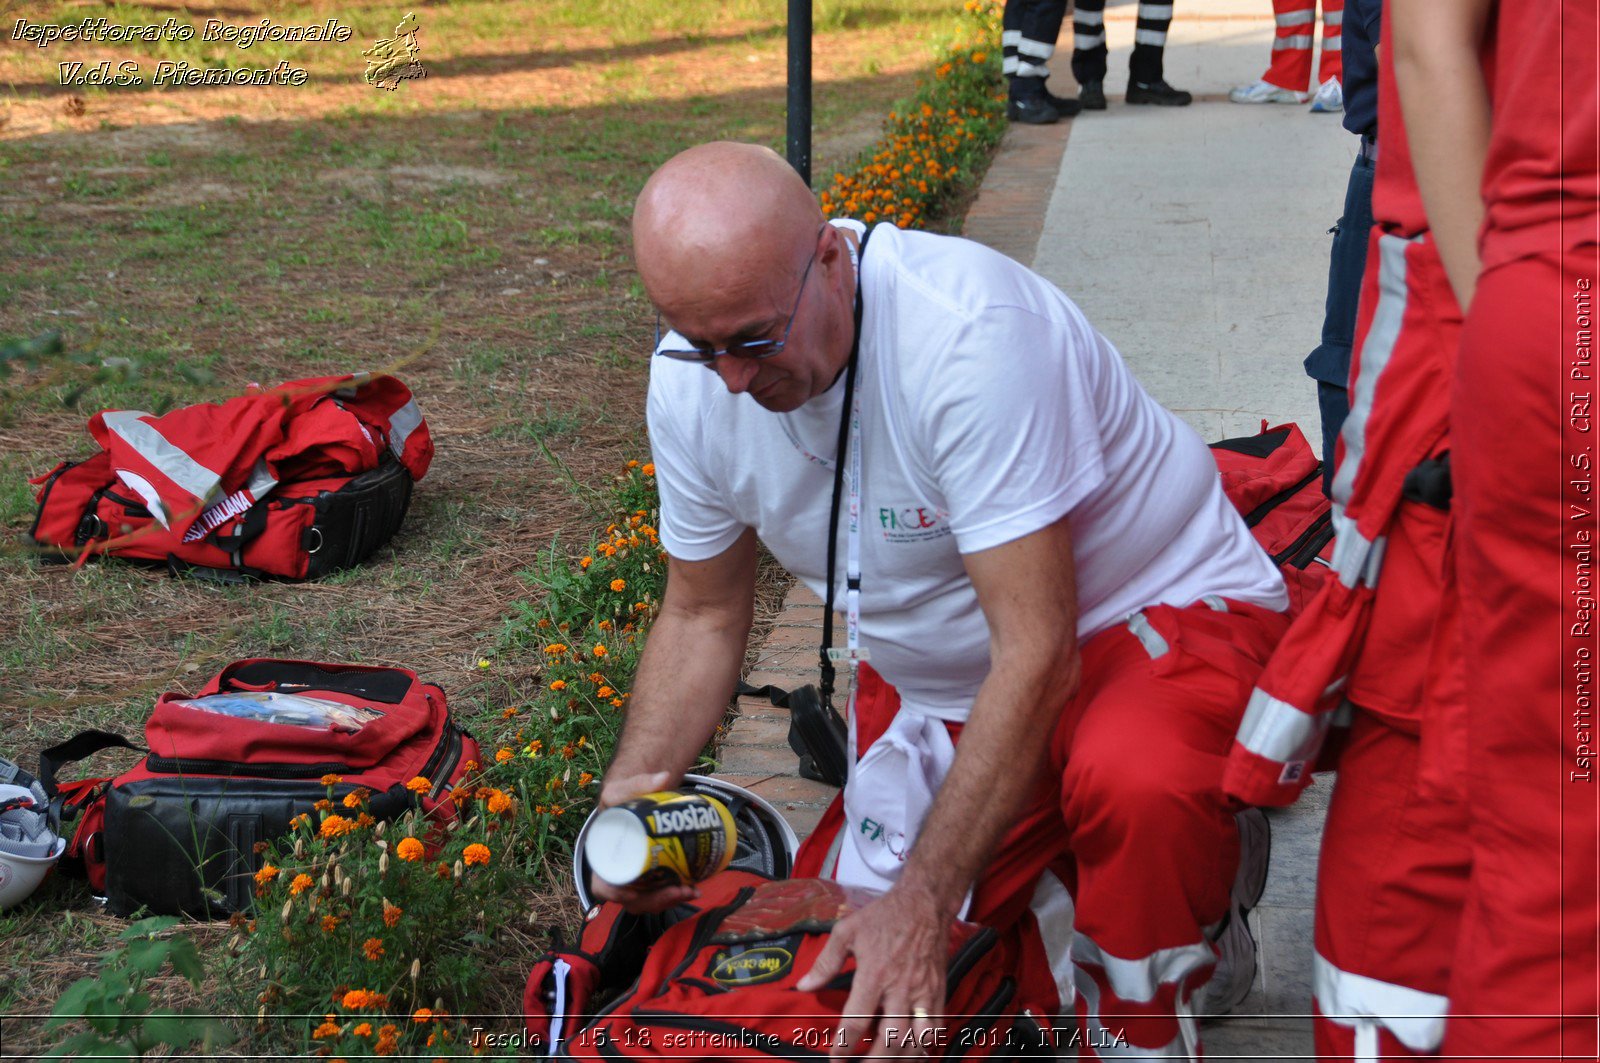 Jesolo - 15-18 settembre 2011 - FACE 2011, ITALIA -  Croce Rossa Italiana - Ispettorato Regionale Volontari del Soccorso Piemonte